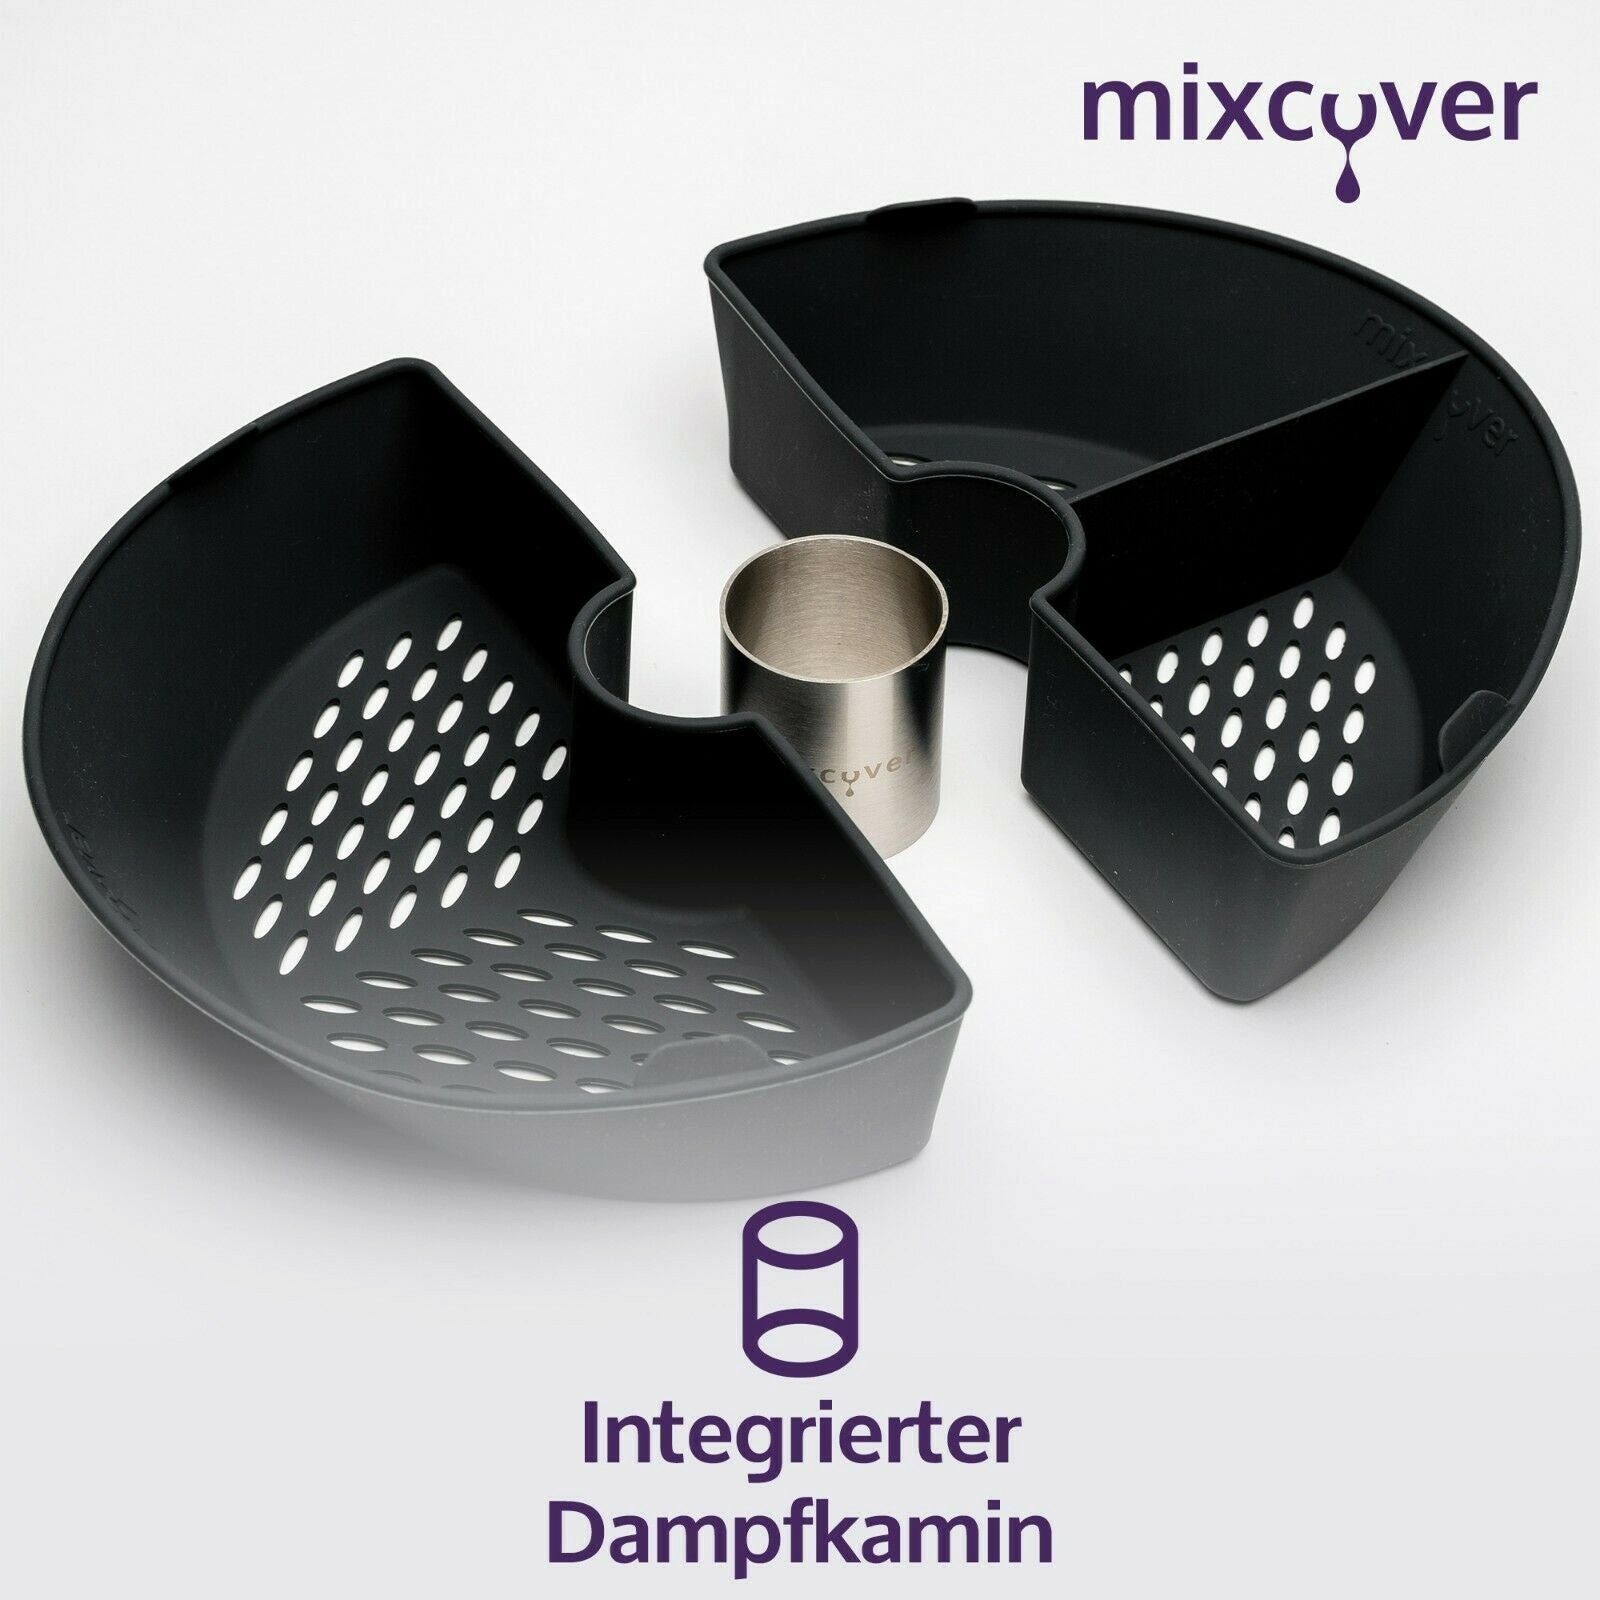 mixcover Cookit Bosch (HALB) Mixcover für Küchenmaschinen-Adapter Garraumteiler Dampfgarraum